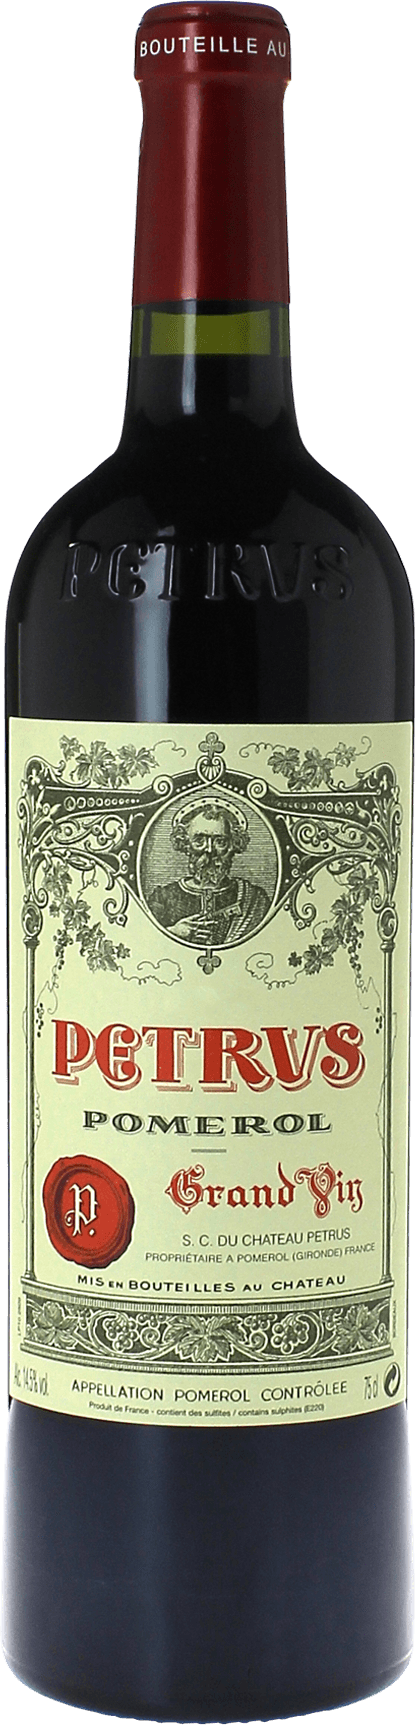 Petrus 1982  Pomerol, Bordeaux rouge